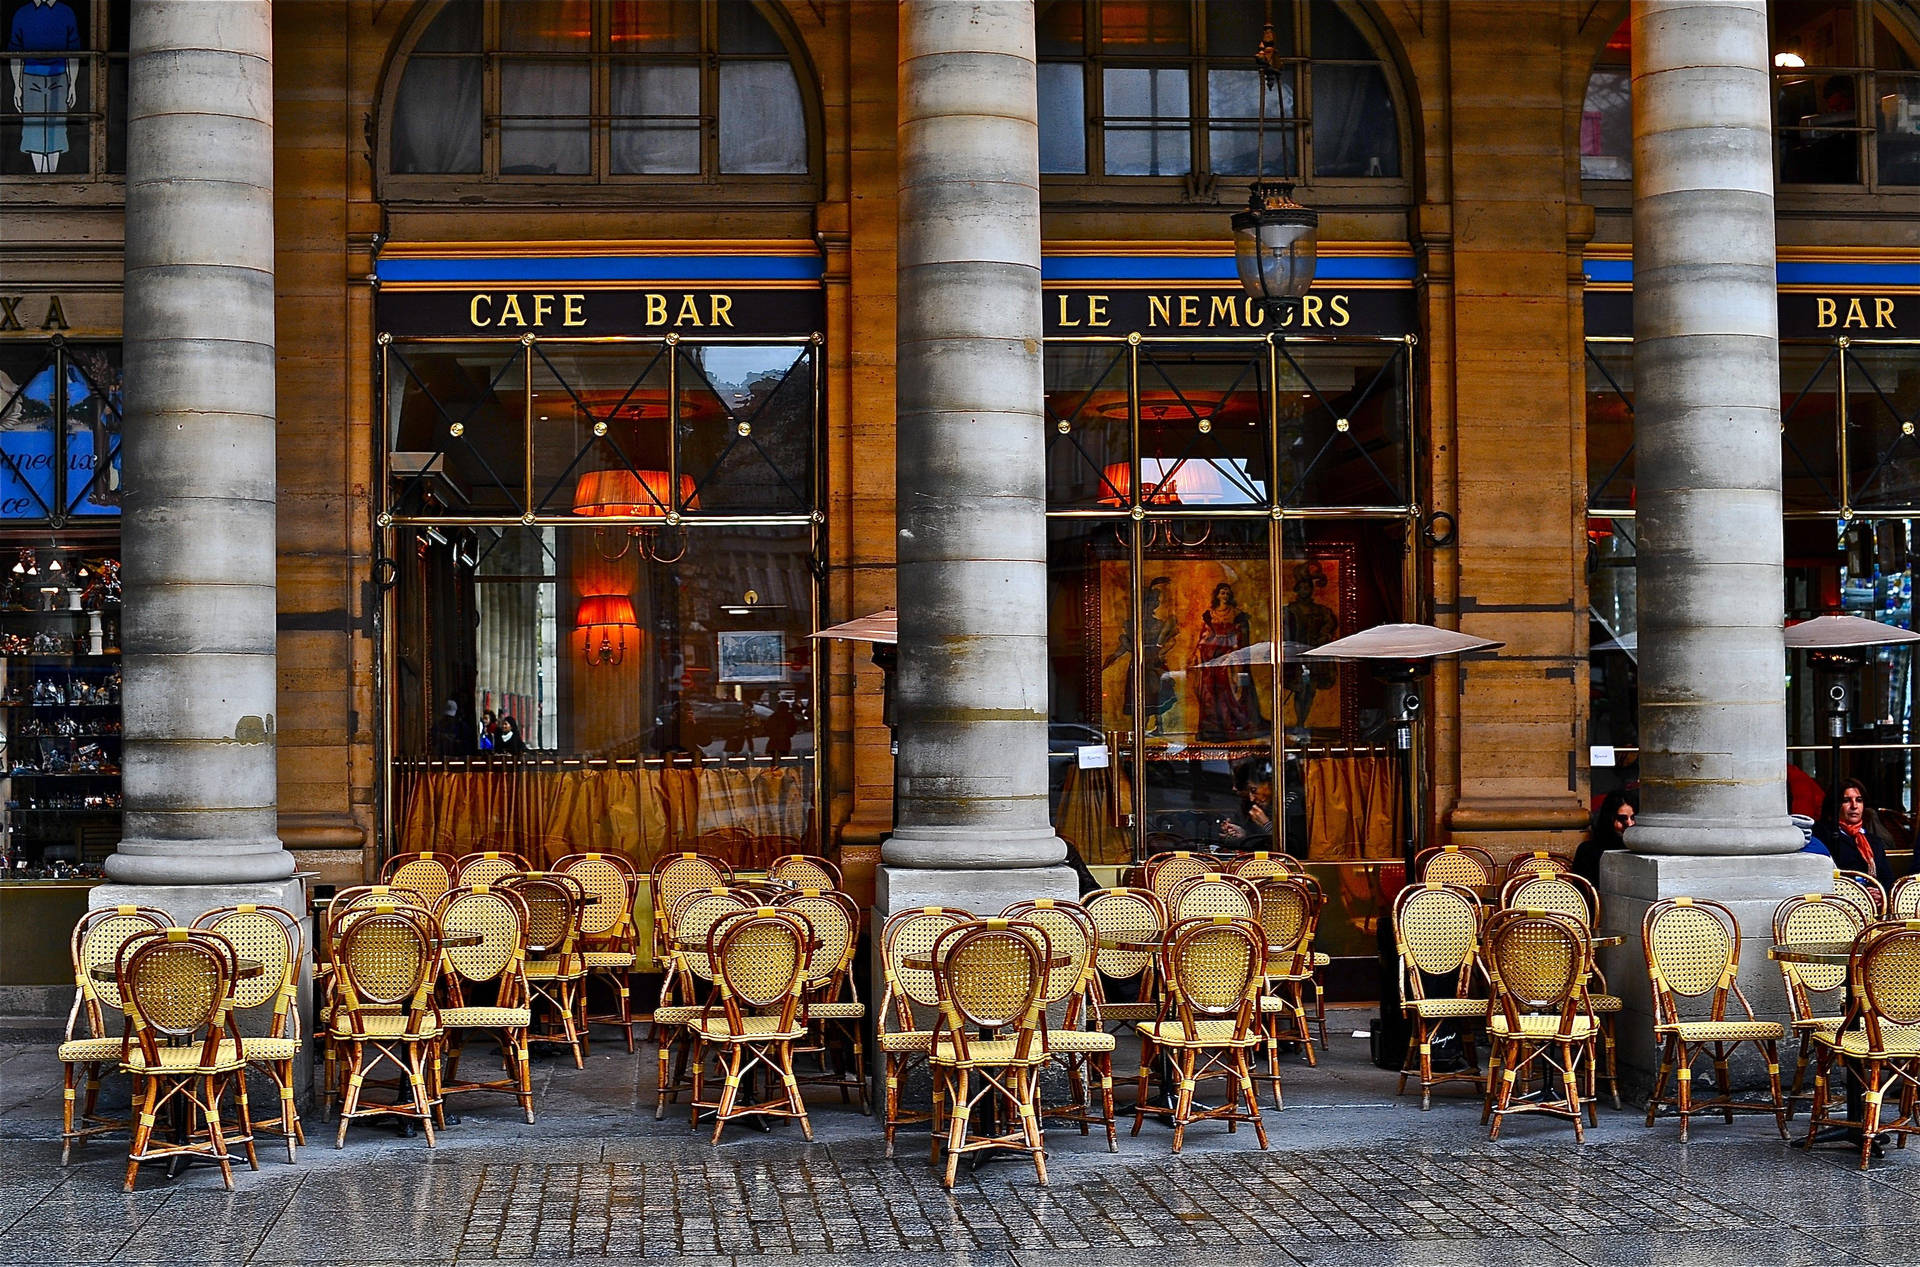 Le Nemours Cafe Bar In Paris Background